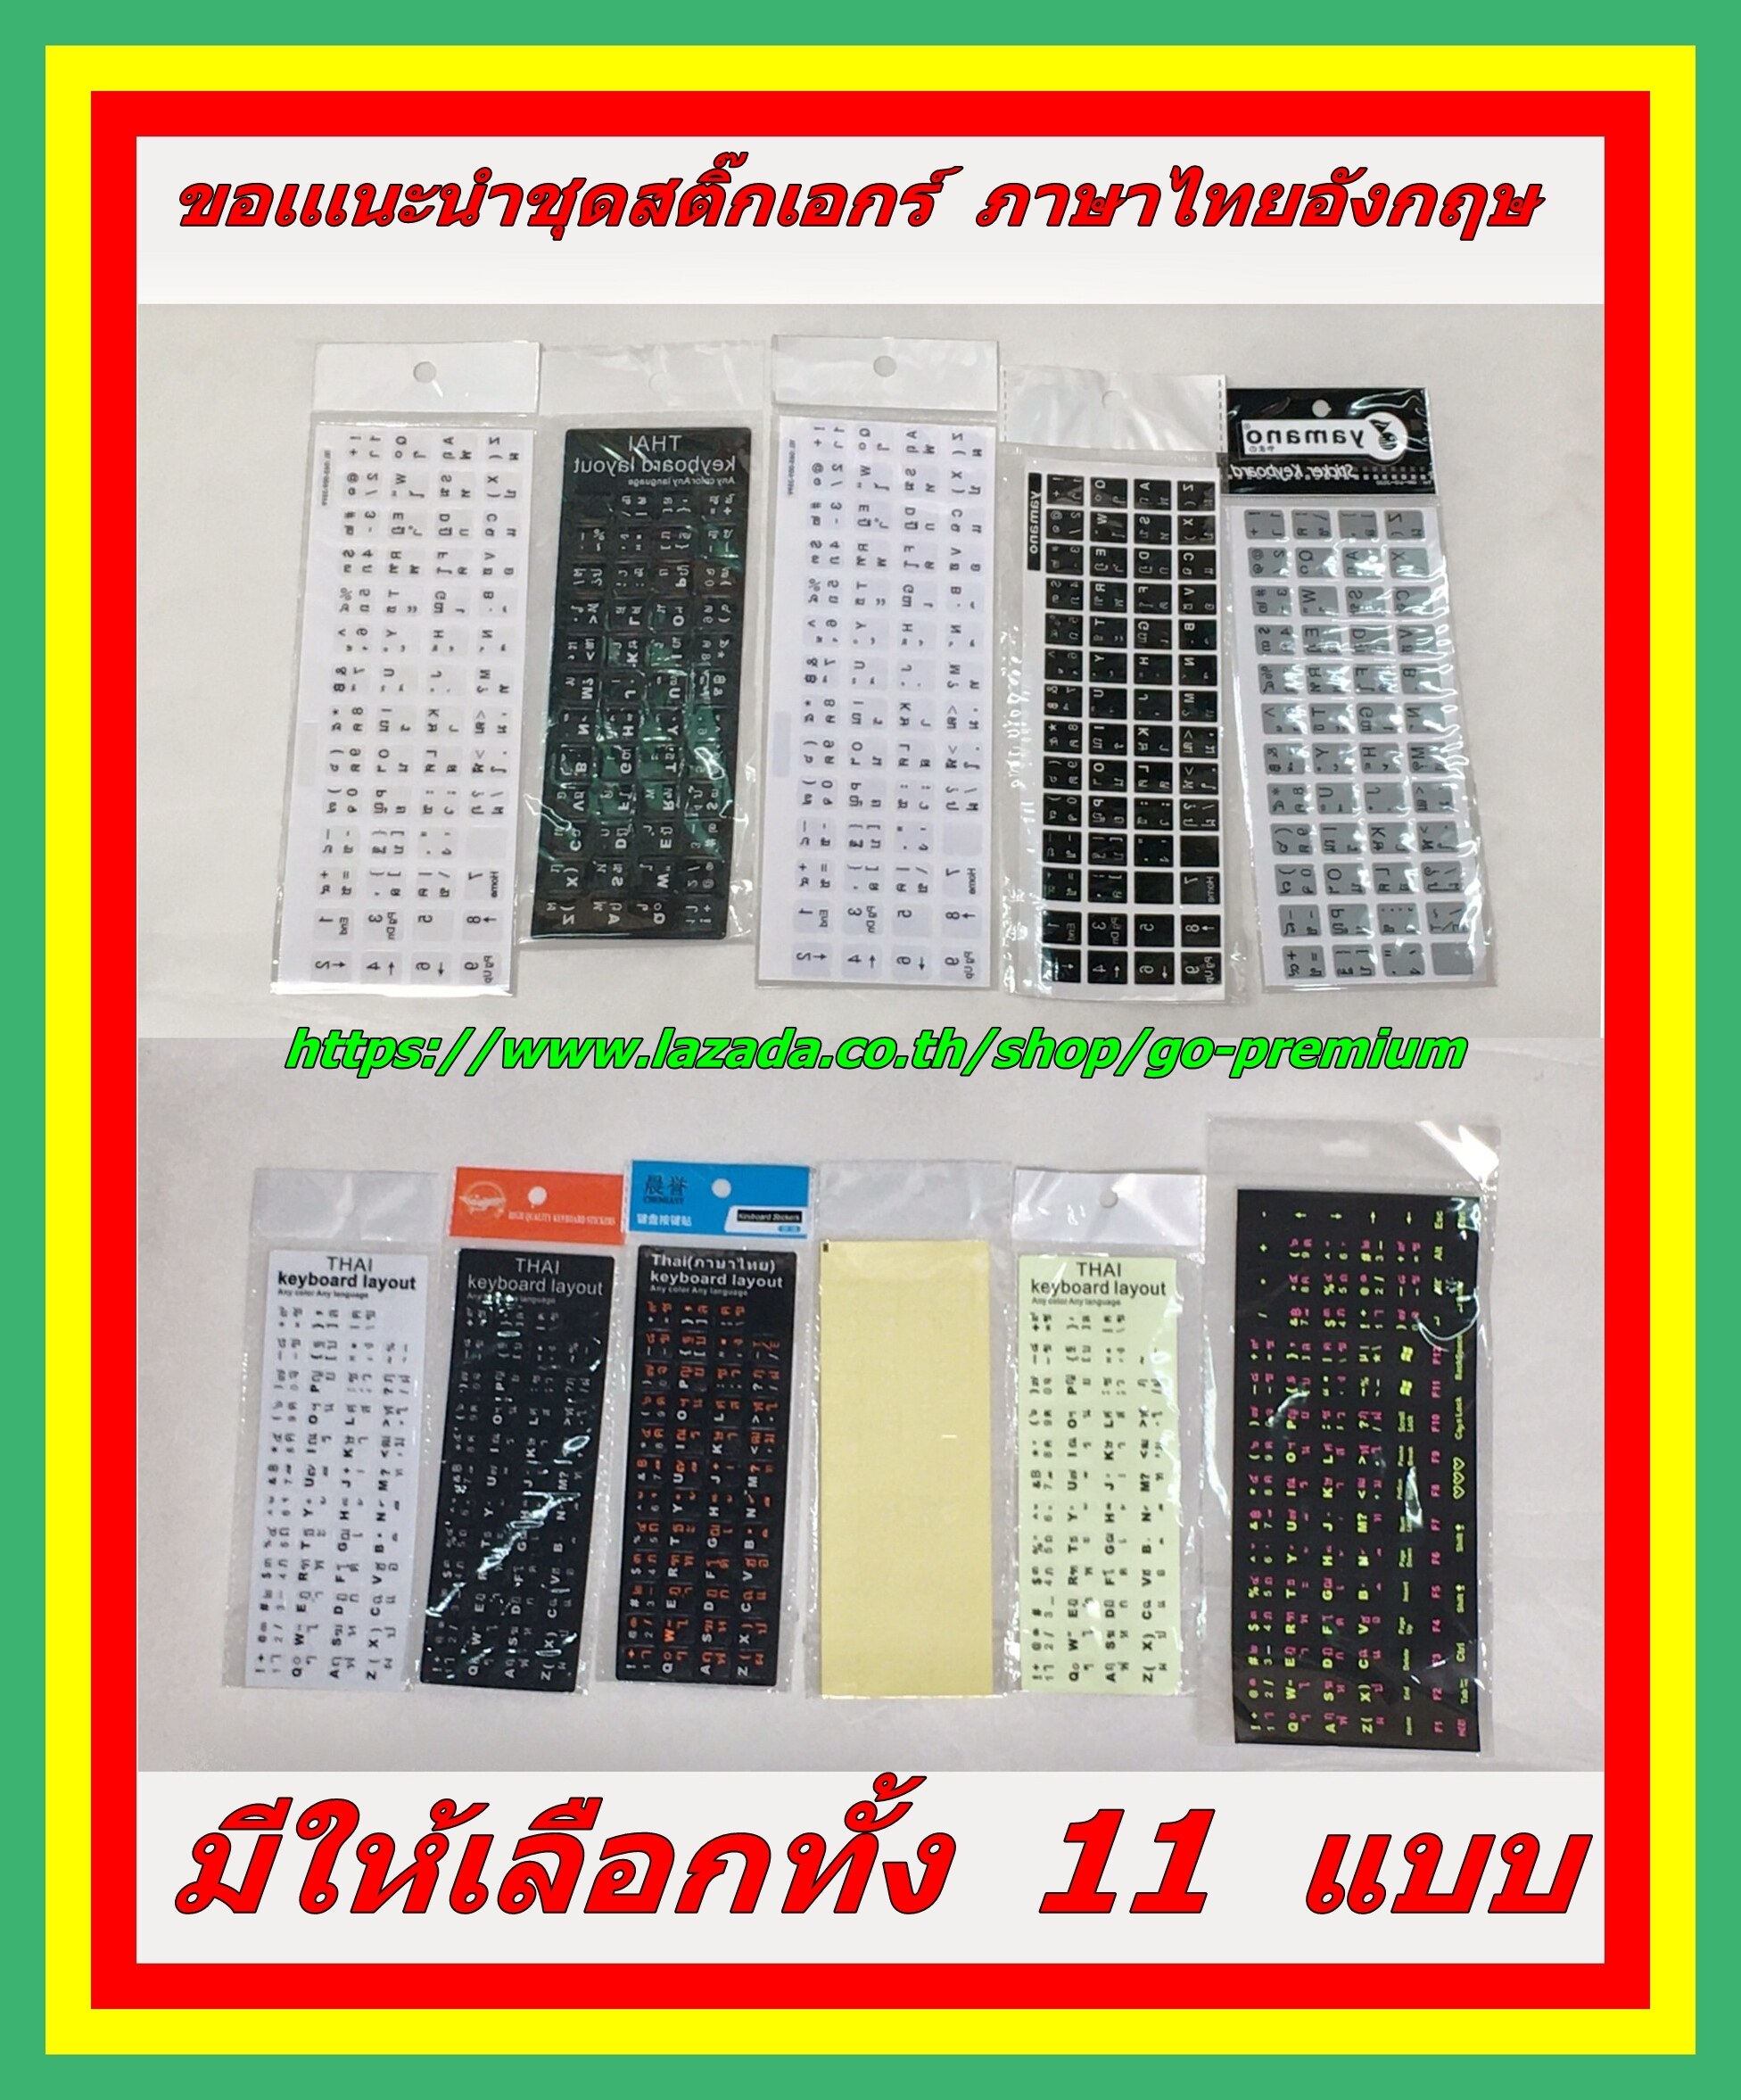 สติกเกอร์คีย์บอร์ด ภาษาไทย อังกฤษ / Thai English Keyboard sticker สติ๊กเกอร์ภาษาไทยแบบ 3M เรืองแสง